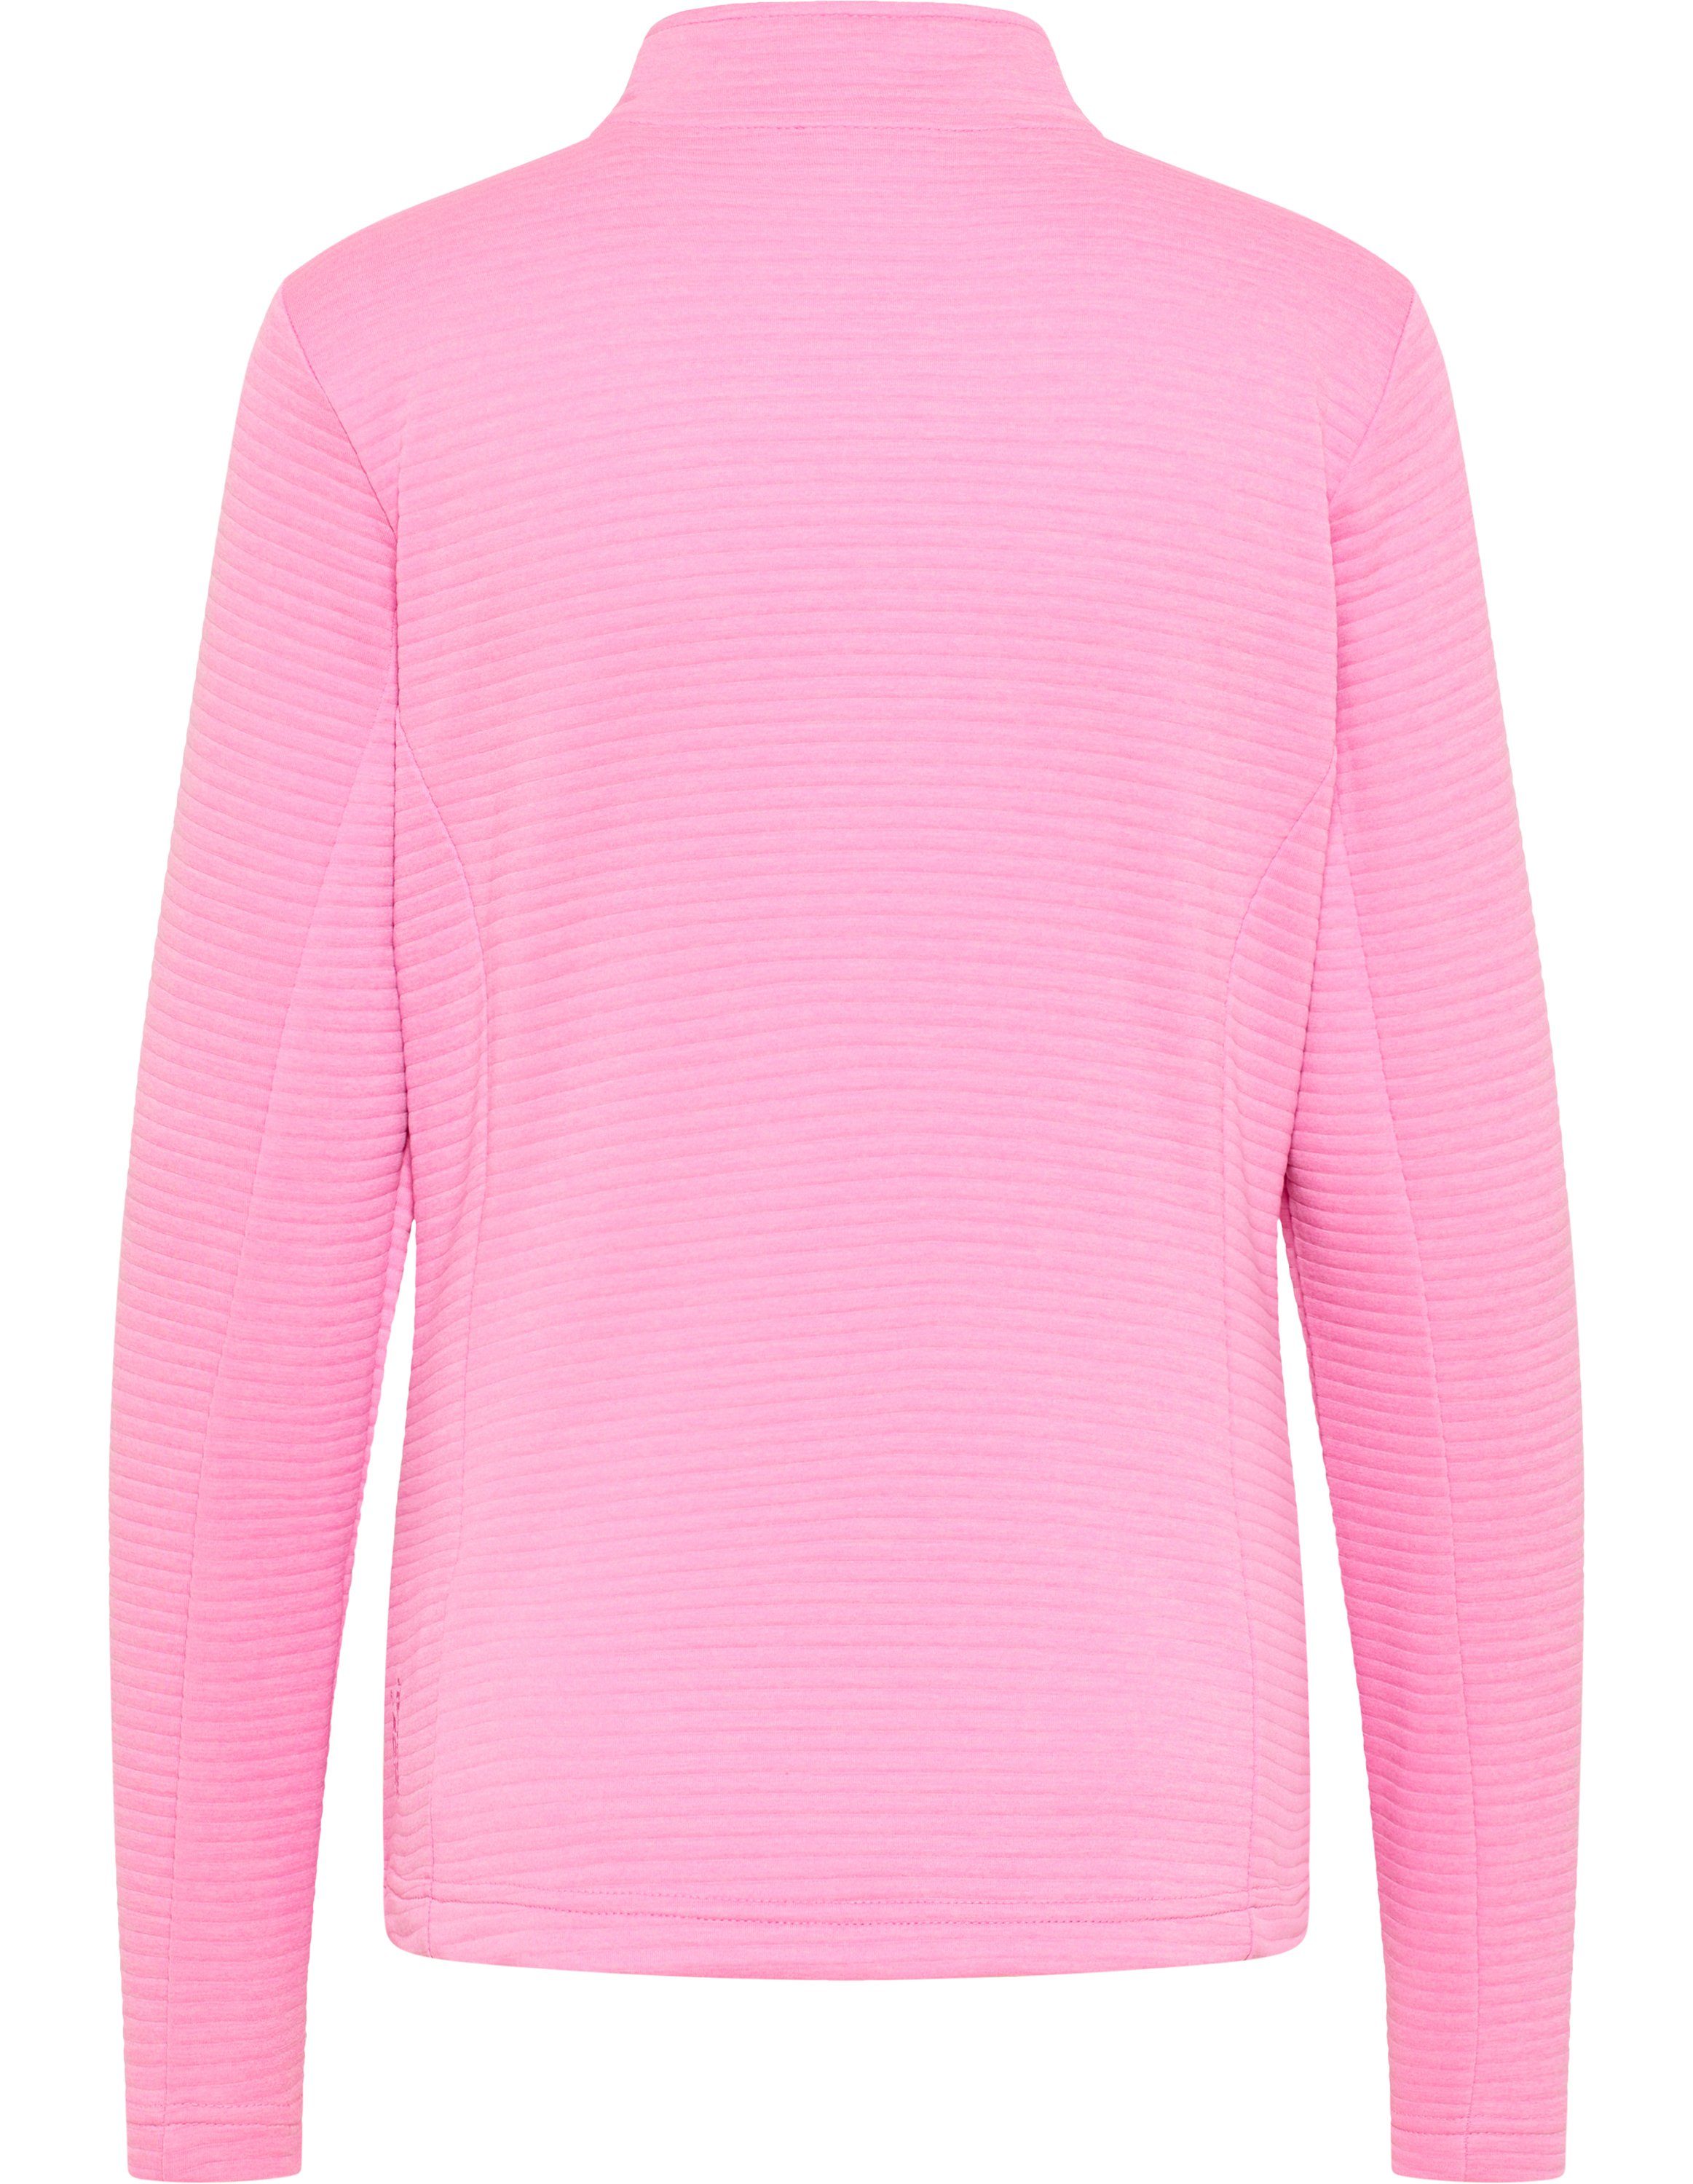 Joy PEGGY cyclam pink Sportswear melange Jacke Trainingsjacke